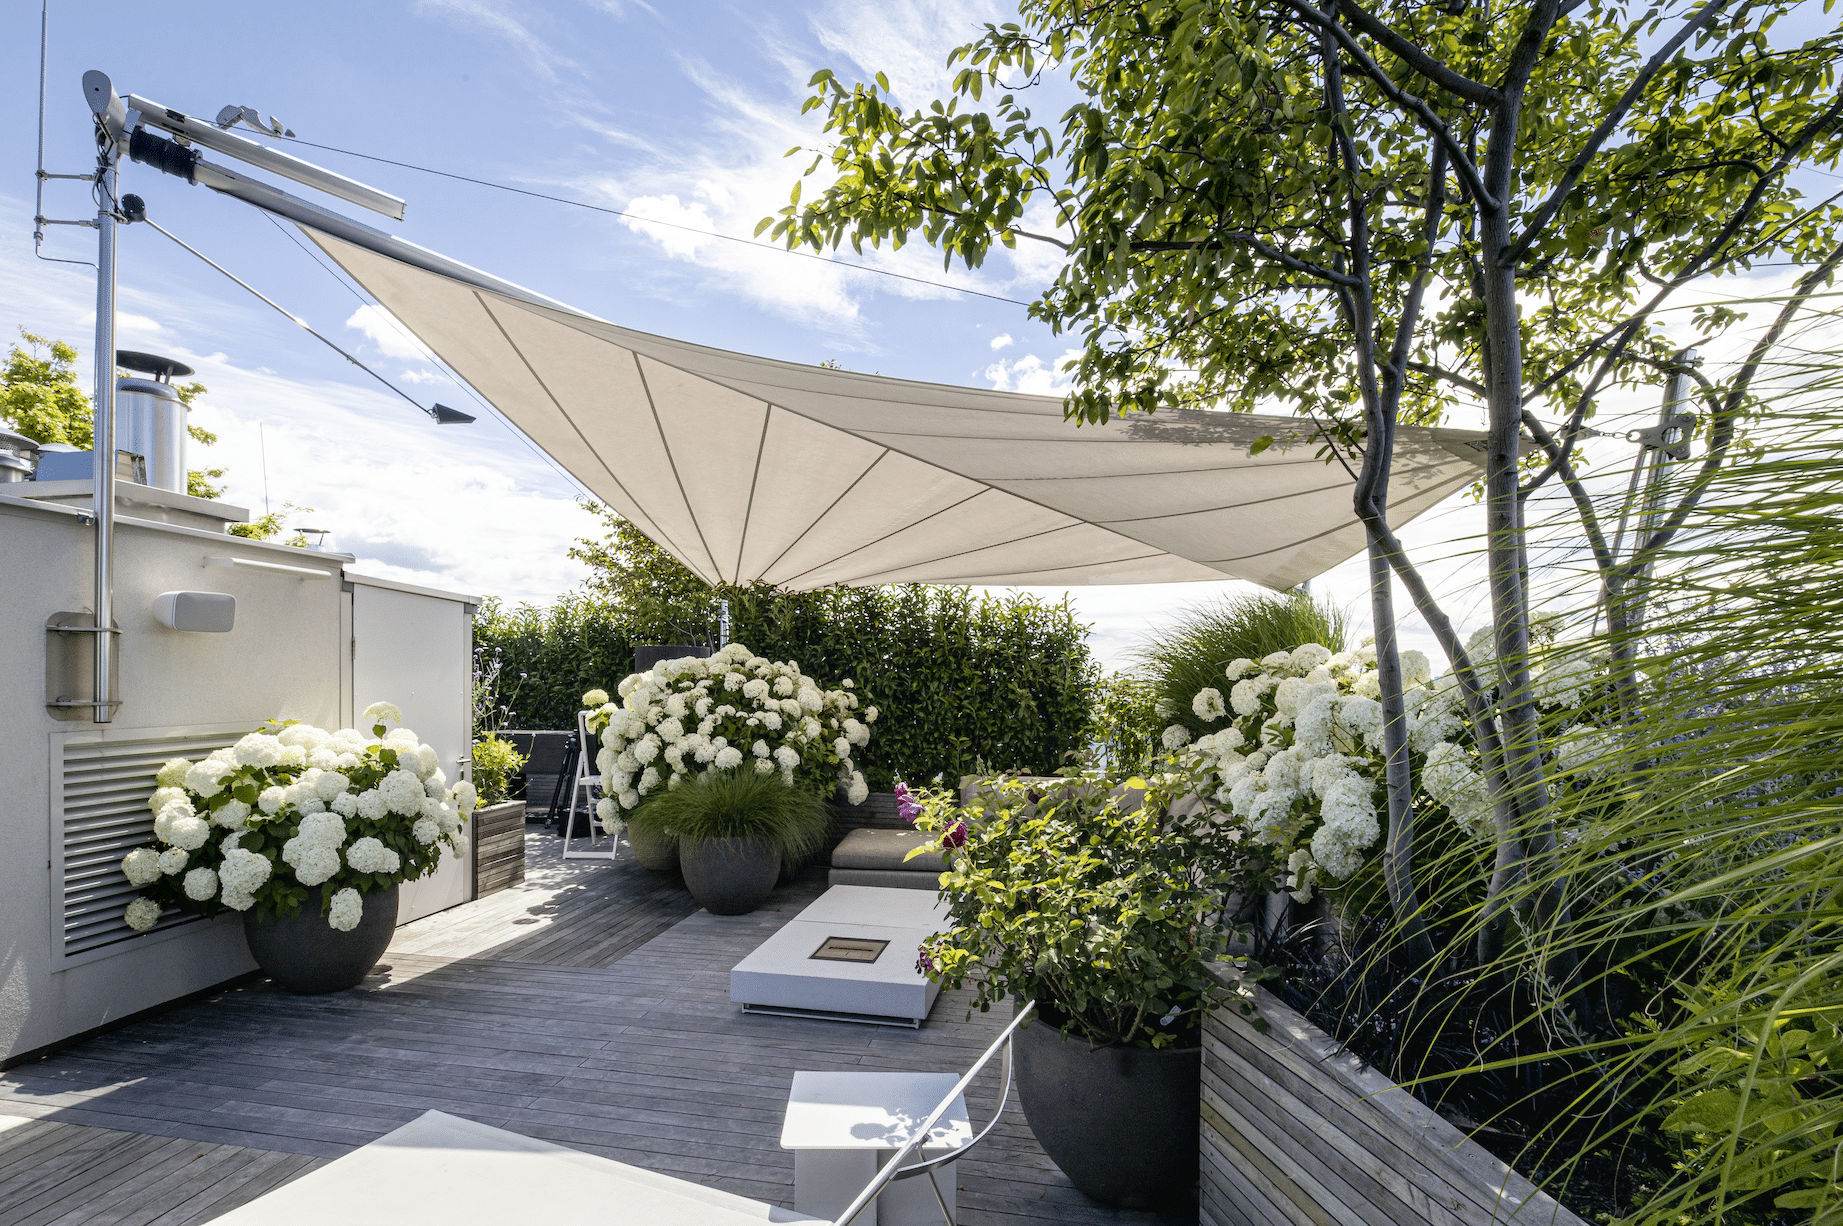 Dachterrasse mit vielen Blumen und modernem Sonnensegel von SunSquare.